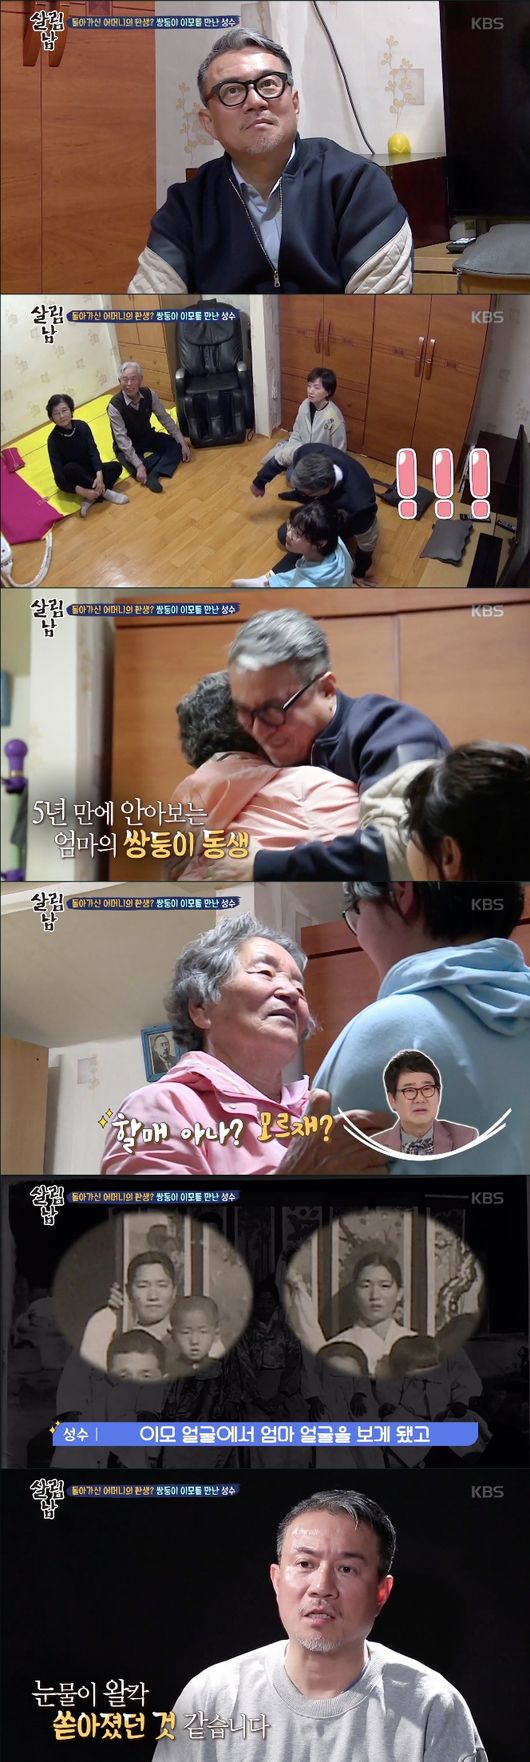 [사진] KBS 2TV '살림남2' 김성수